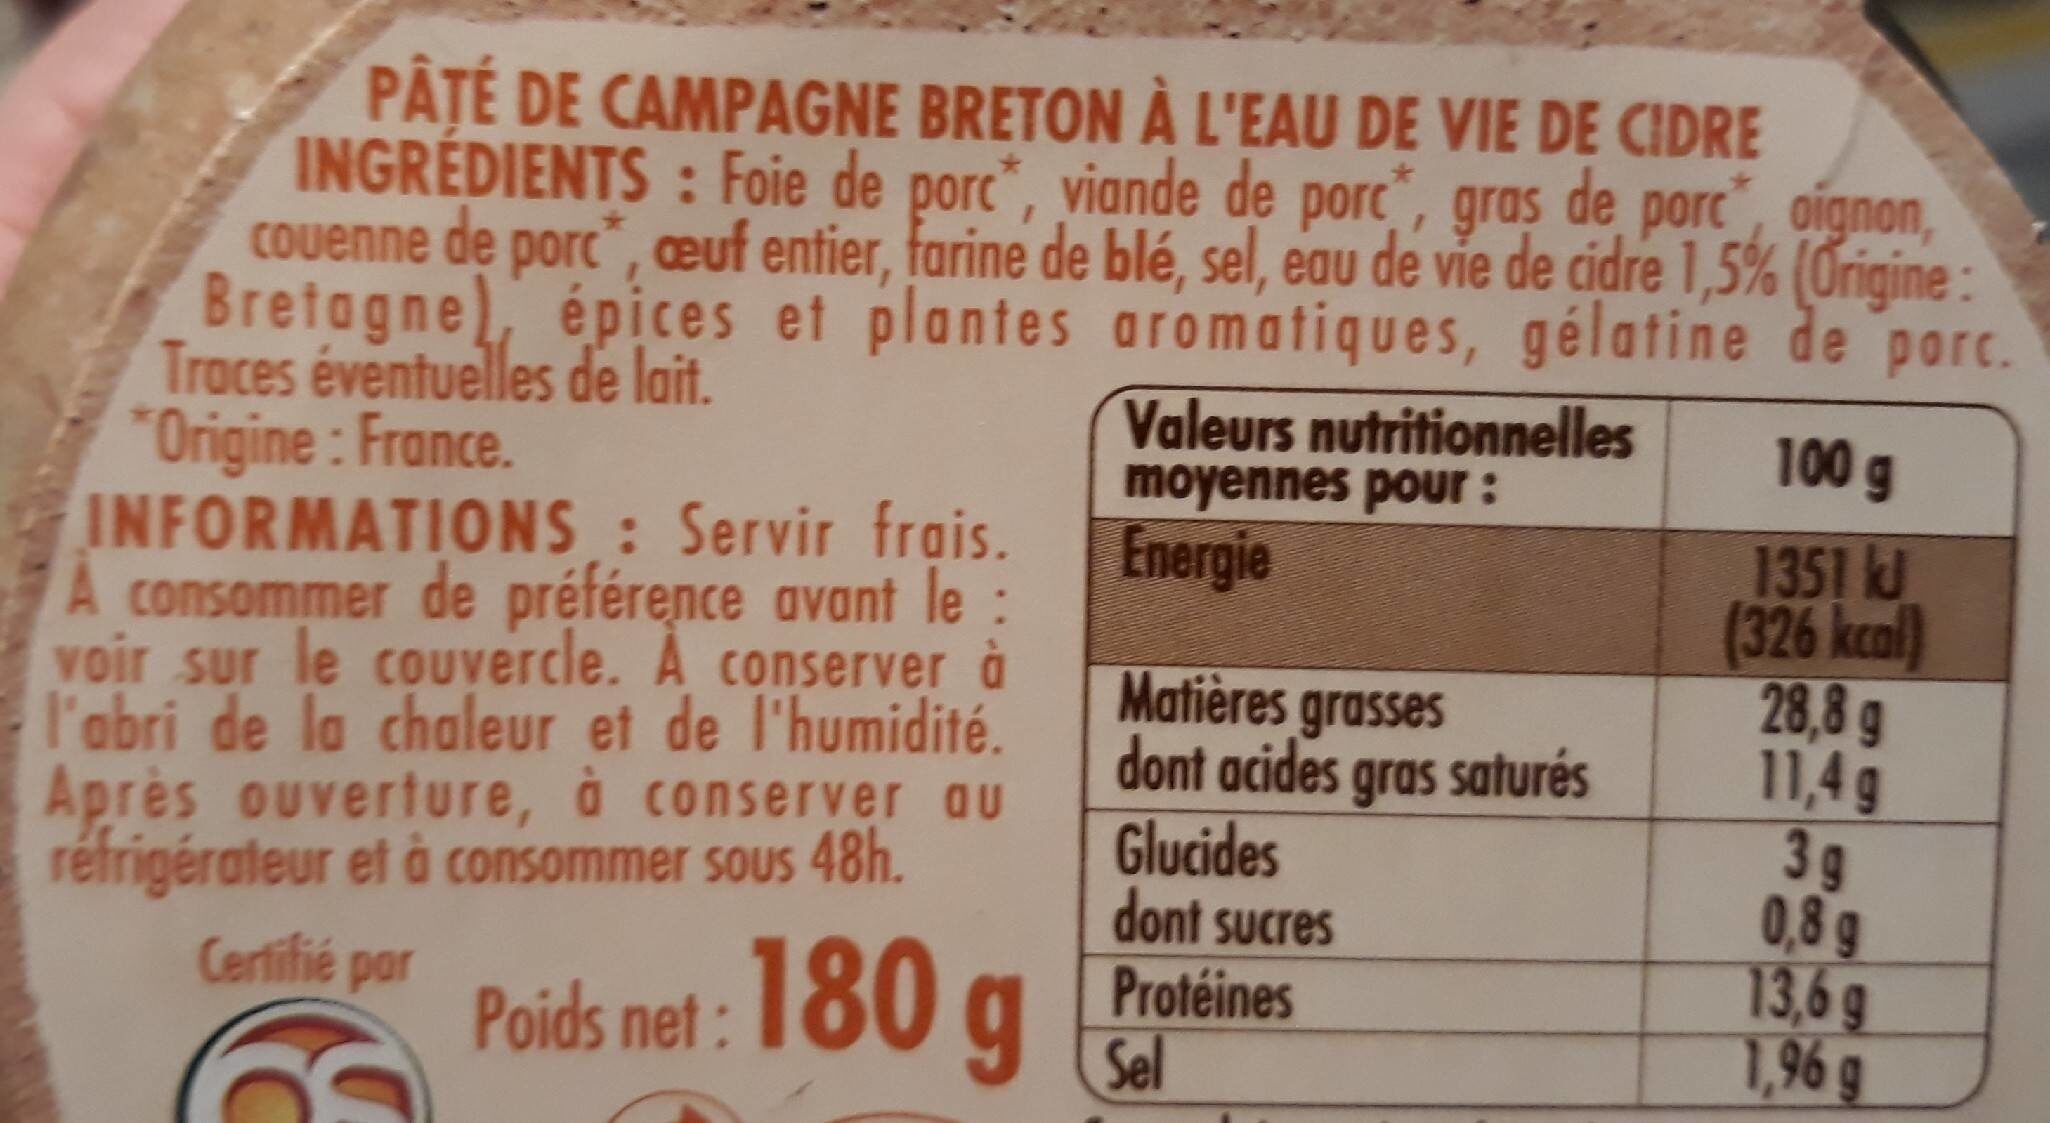 Pâté de campagne breton à l'eau de vie de cidre - Nutrition facts - fr